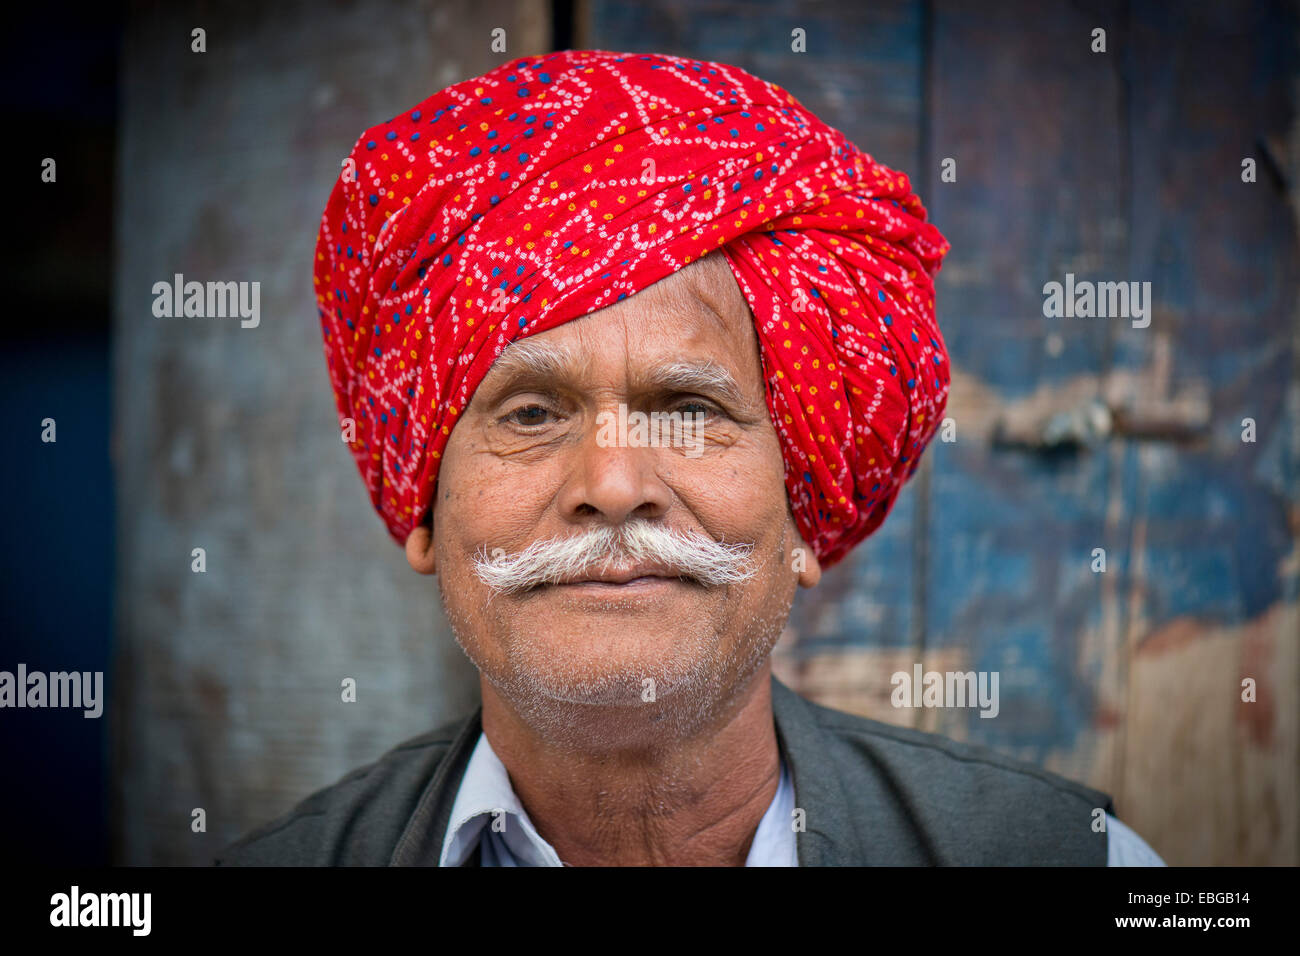 L'homme indien avec un turban rouge, Bassi, Rajasthan, Inde Banque D'Images